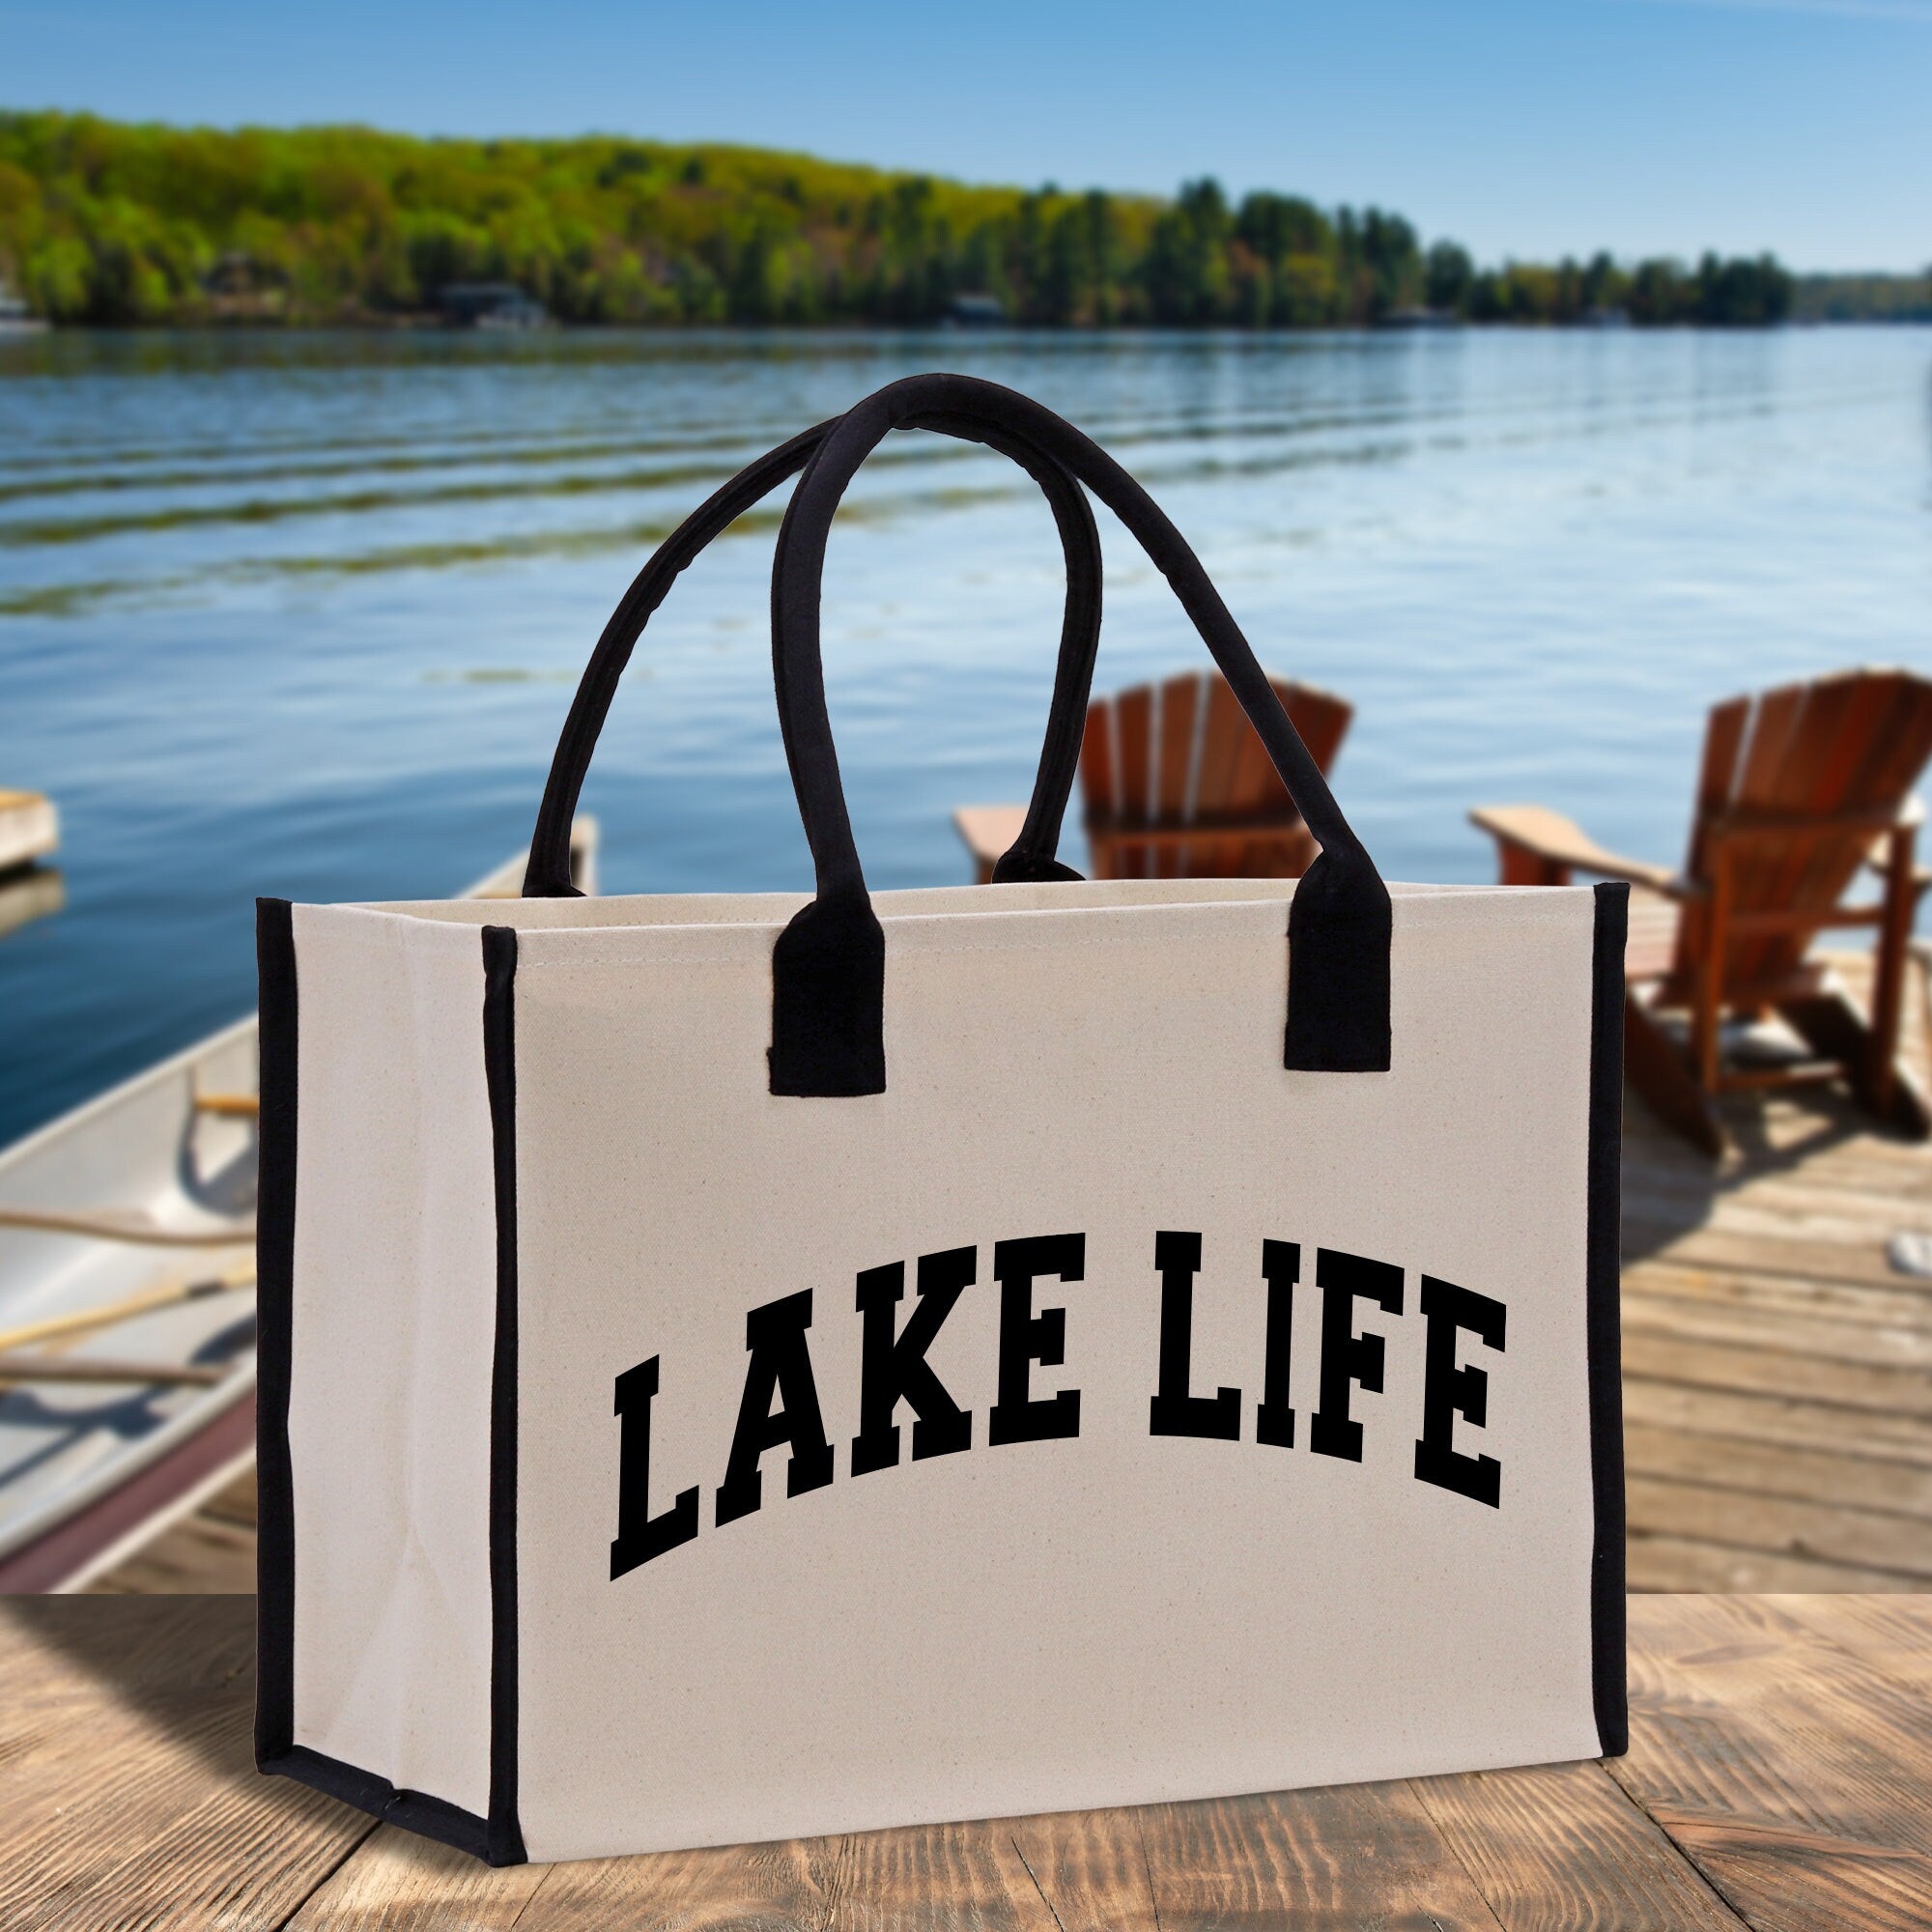 a lake life bag sitting on a dock